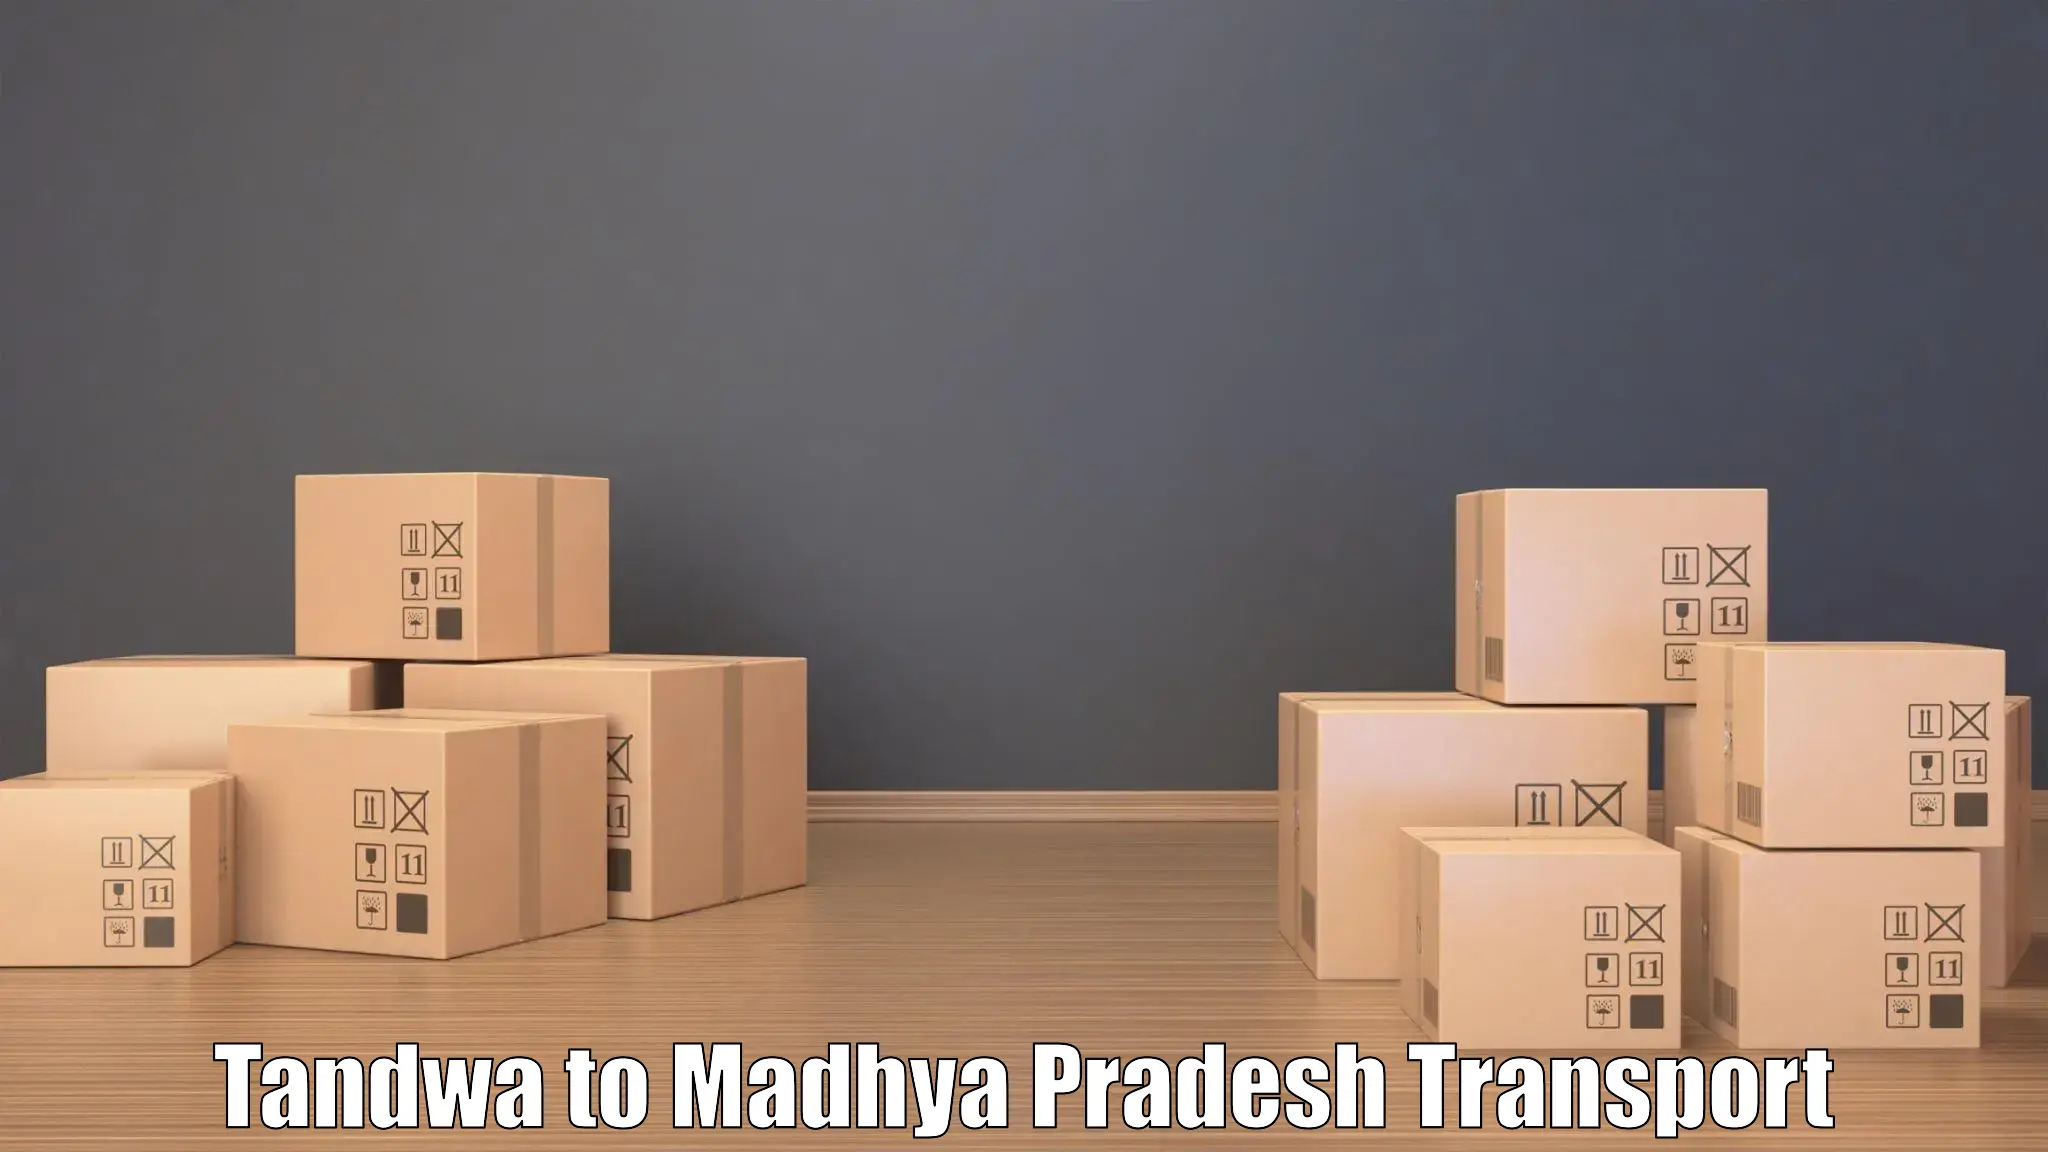 Truck transport companies in India Tandwa to Sarni